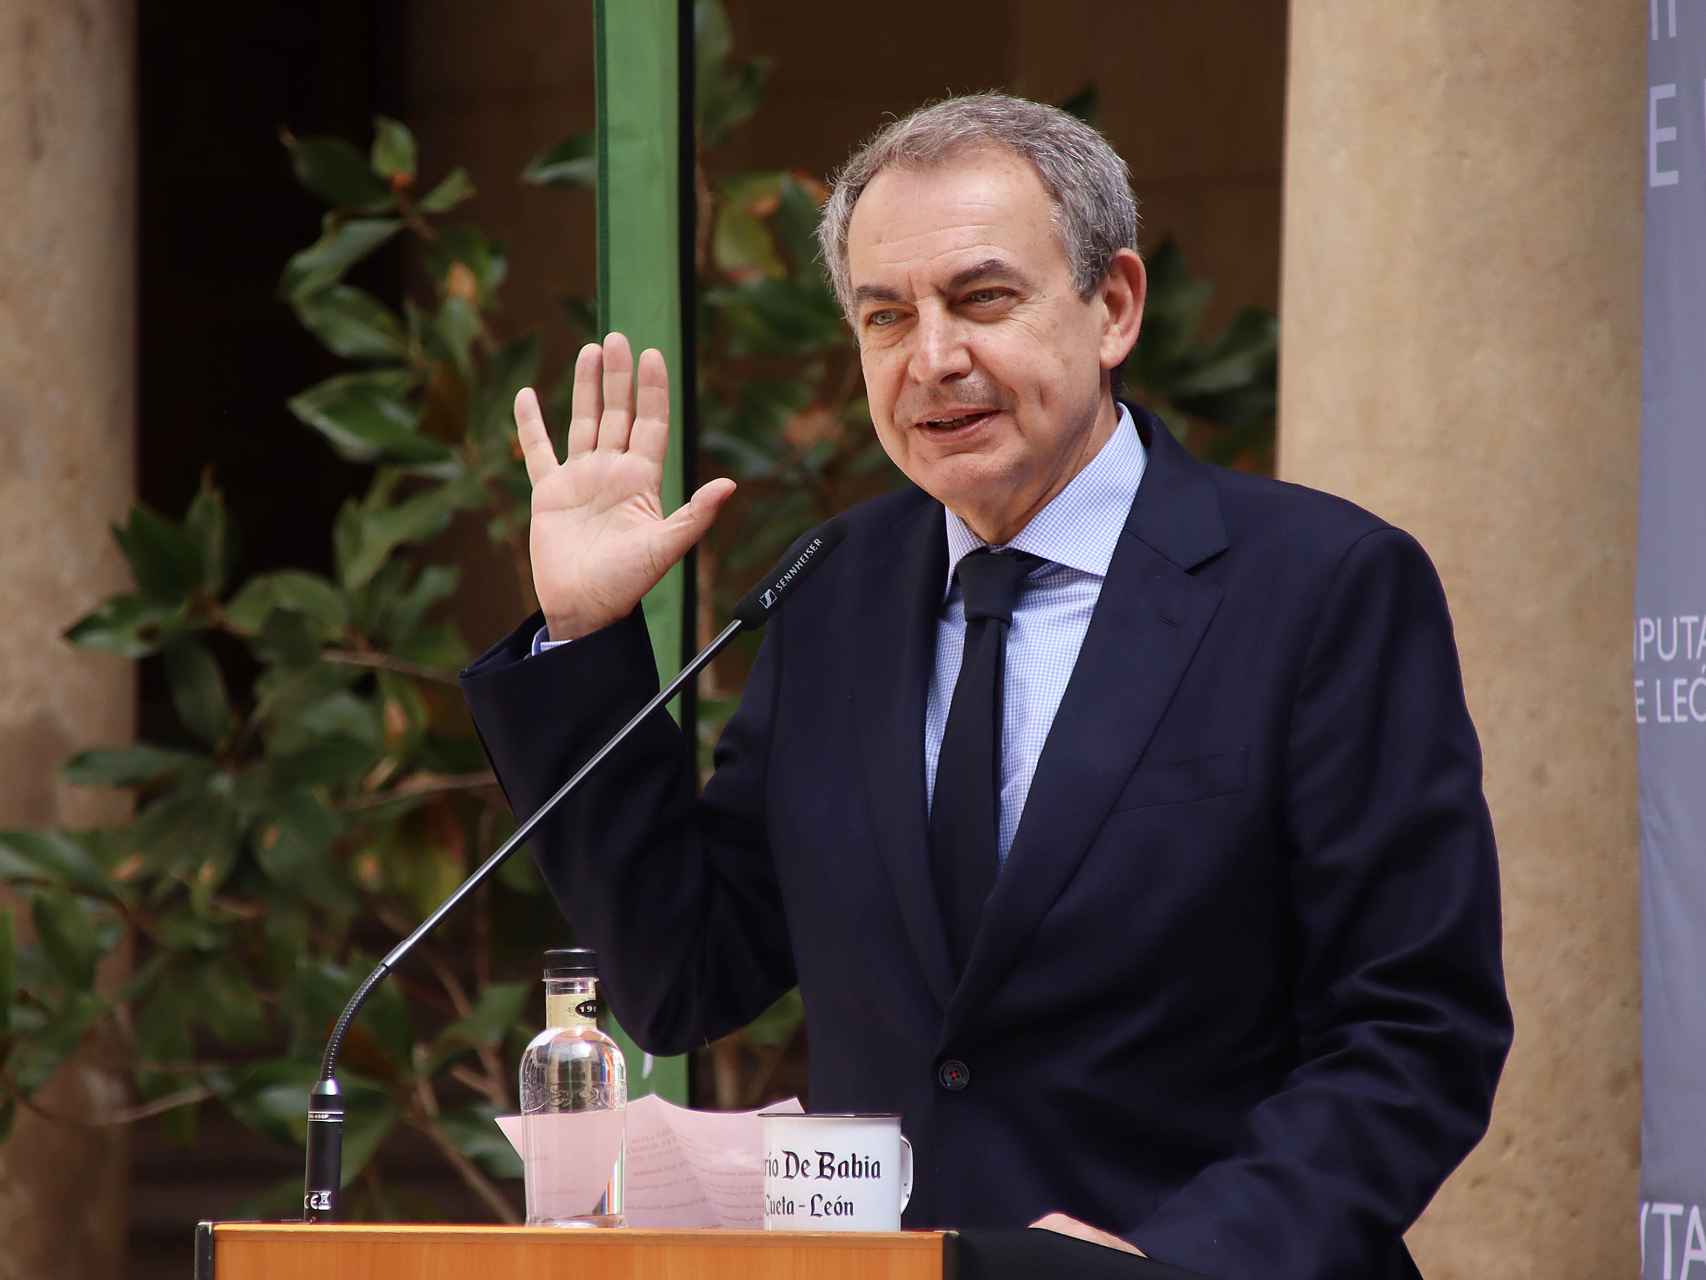 El expresidente del Gobierno José Luis Rodríguez Zapatero asiste a la entrega de los Premios Aventura Trashumante en León, este viernes. / ICAL